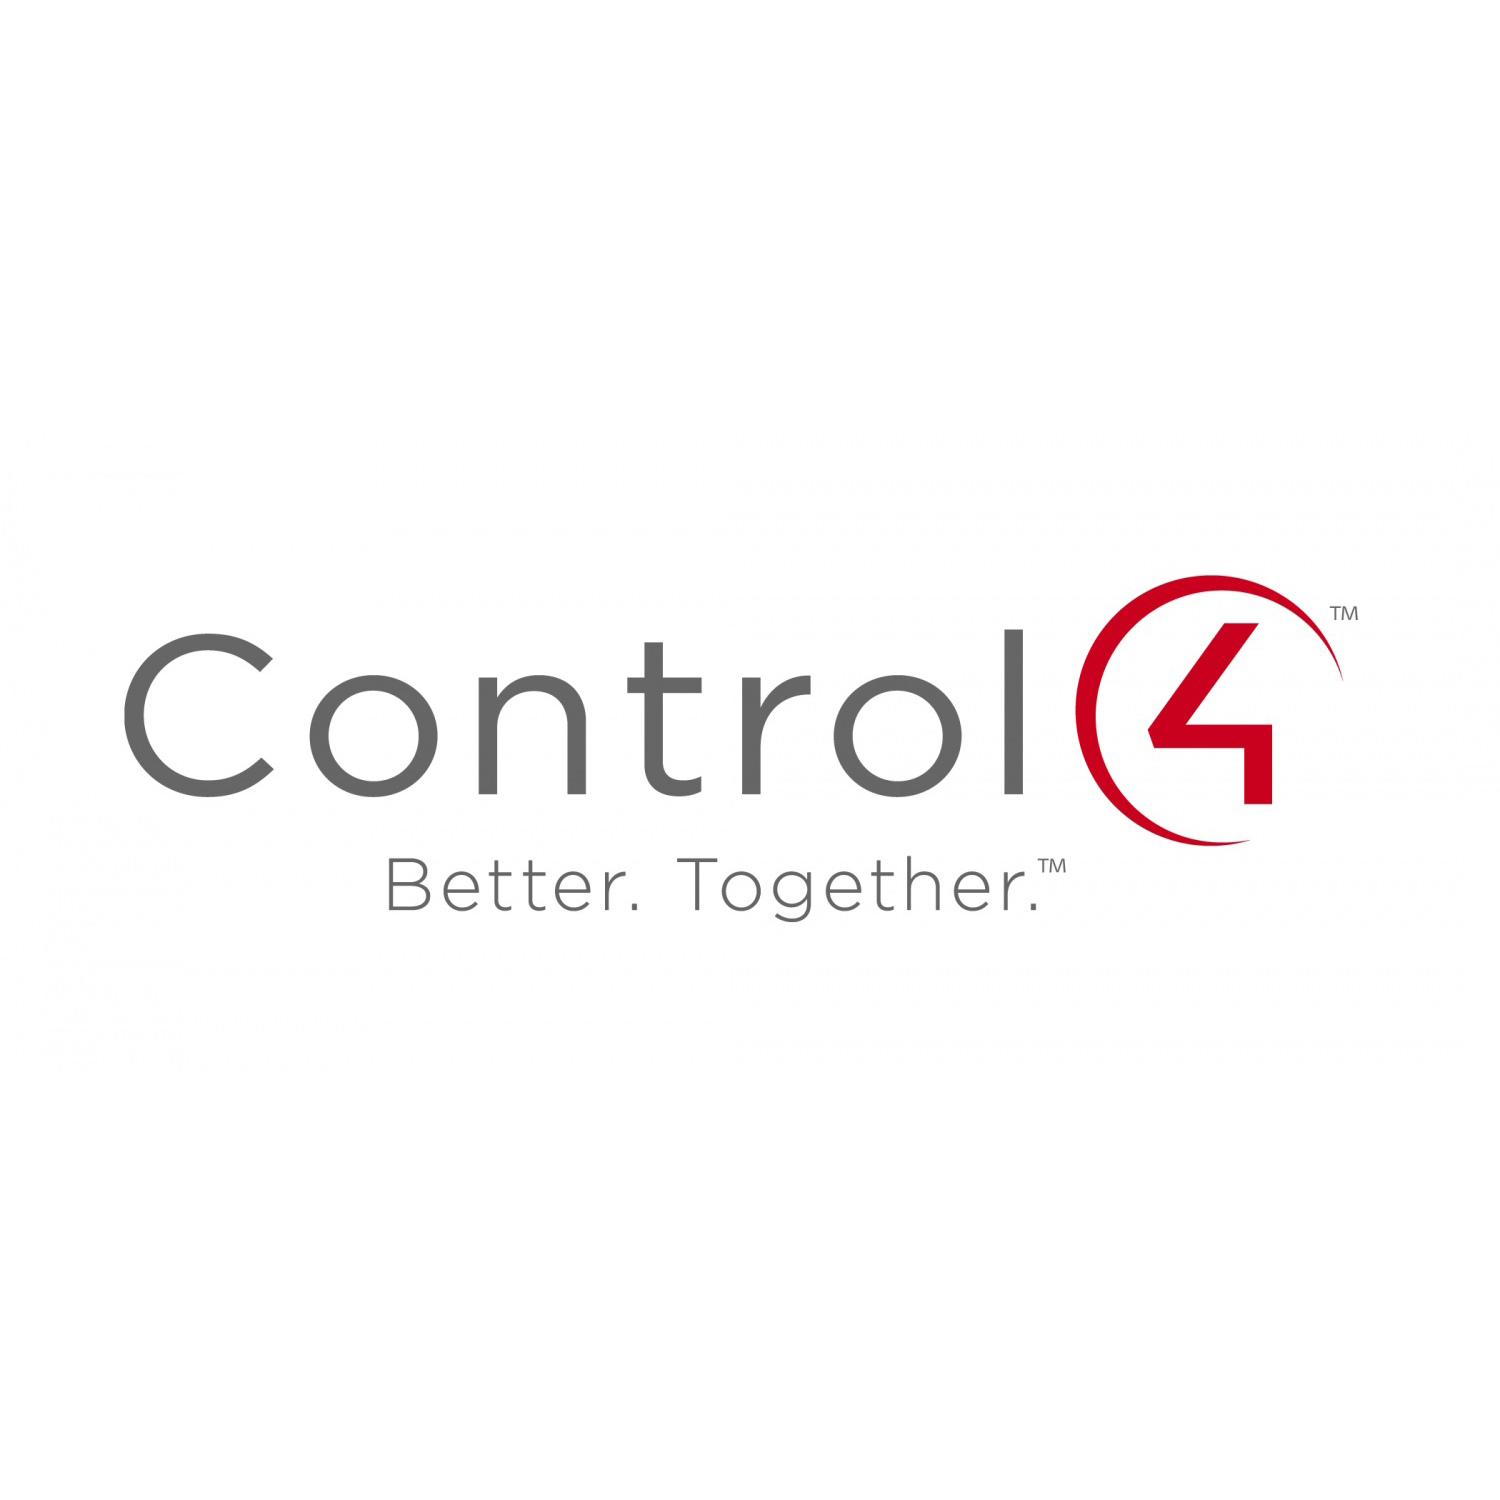 control4_logo_gallery.jpg